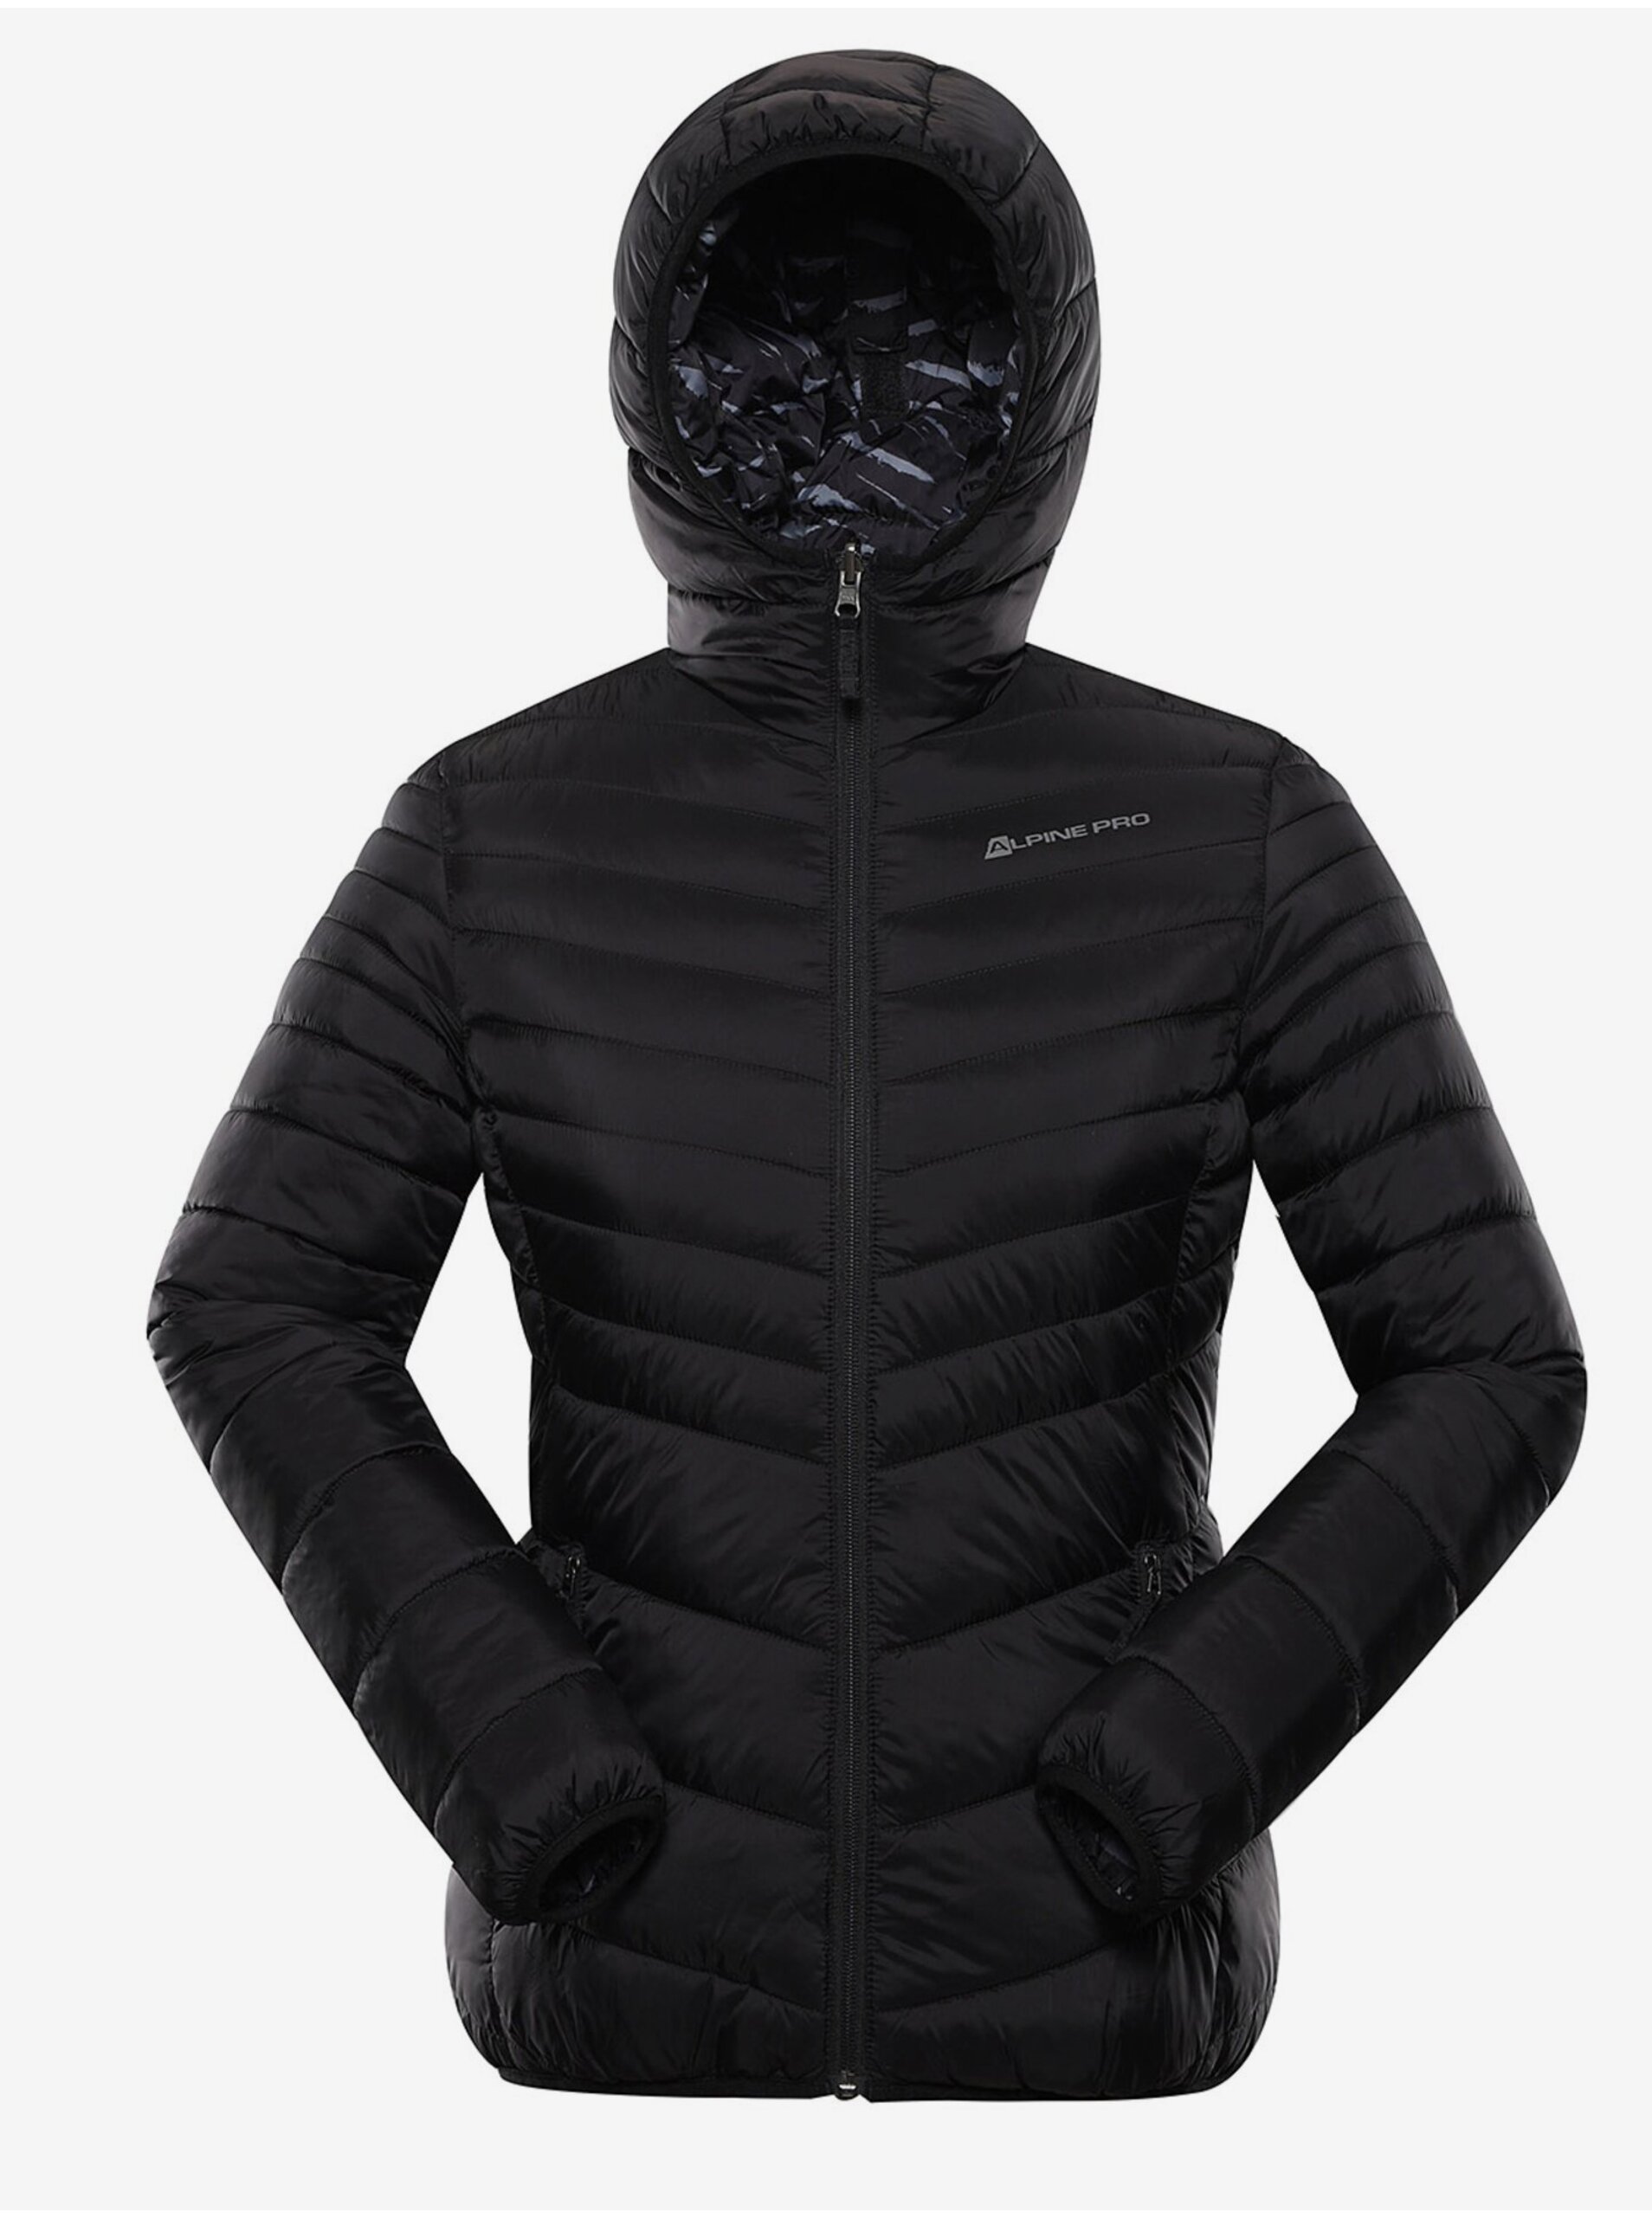 Lacno Čierna dámska obojstranná zimná prešívaná bunda ALPINE PRE EROMA